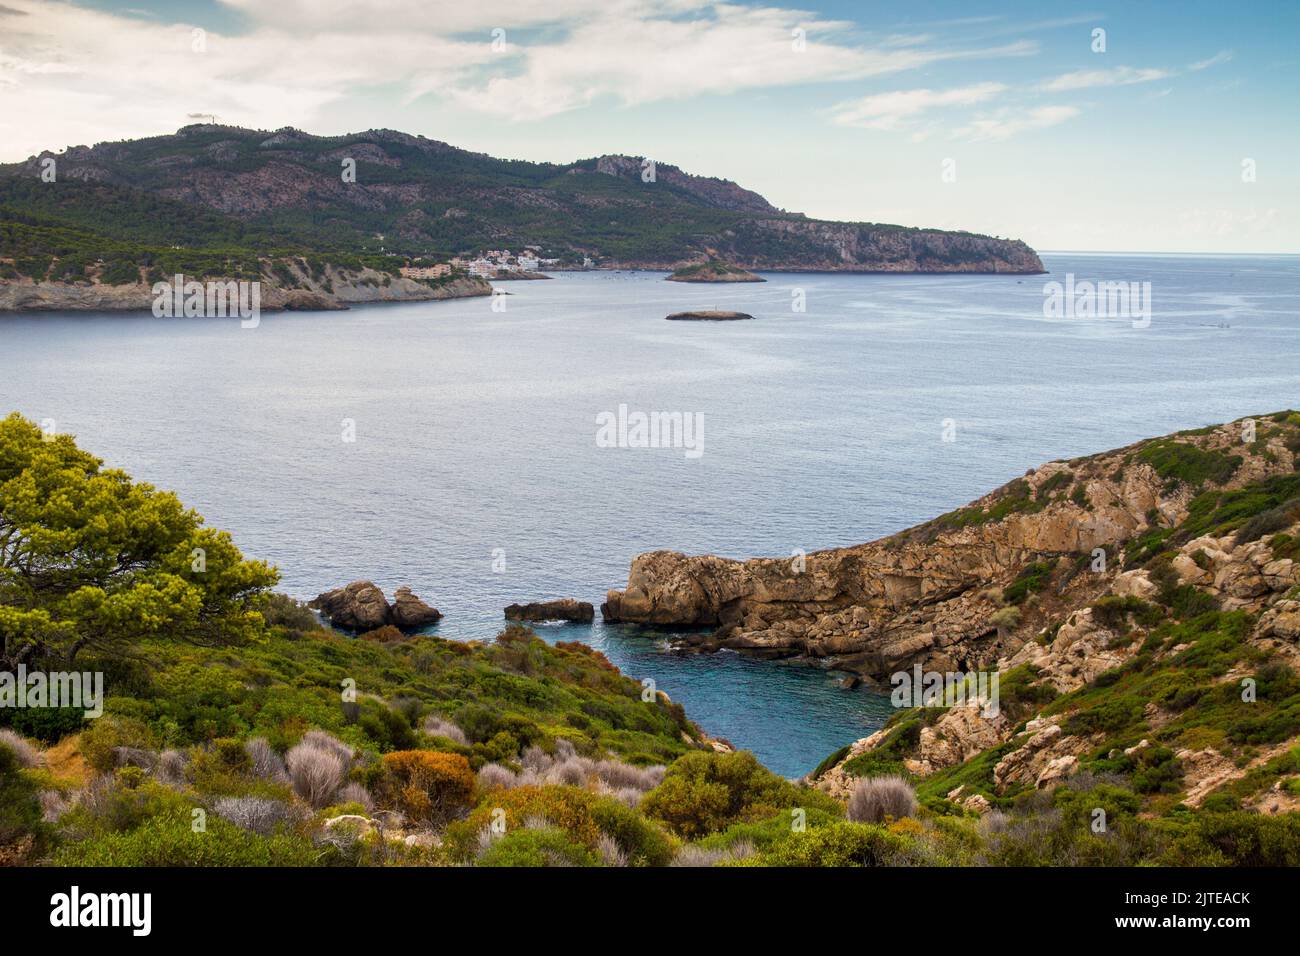 Vue de l'île de sa Dragonera à Sant Elm , Mallorca Espagne Réserve naturelle méditerranéenne Banque D'Images